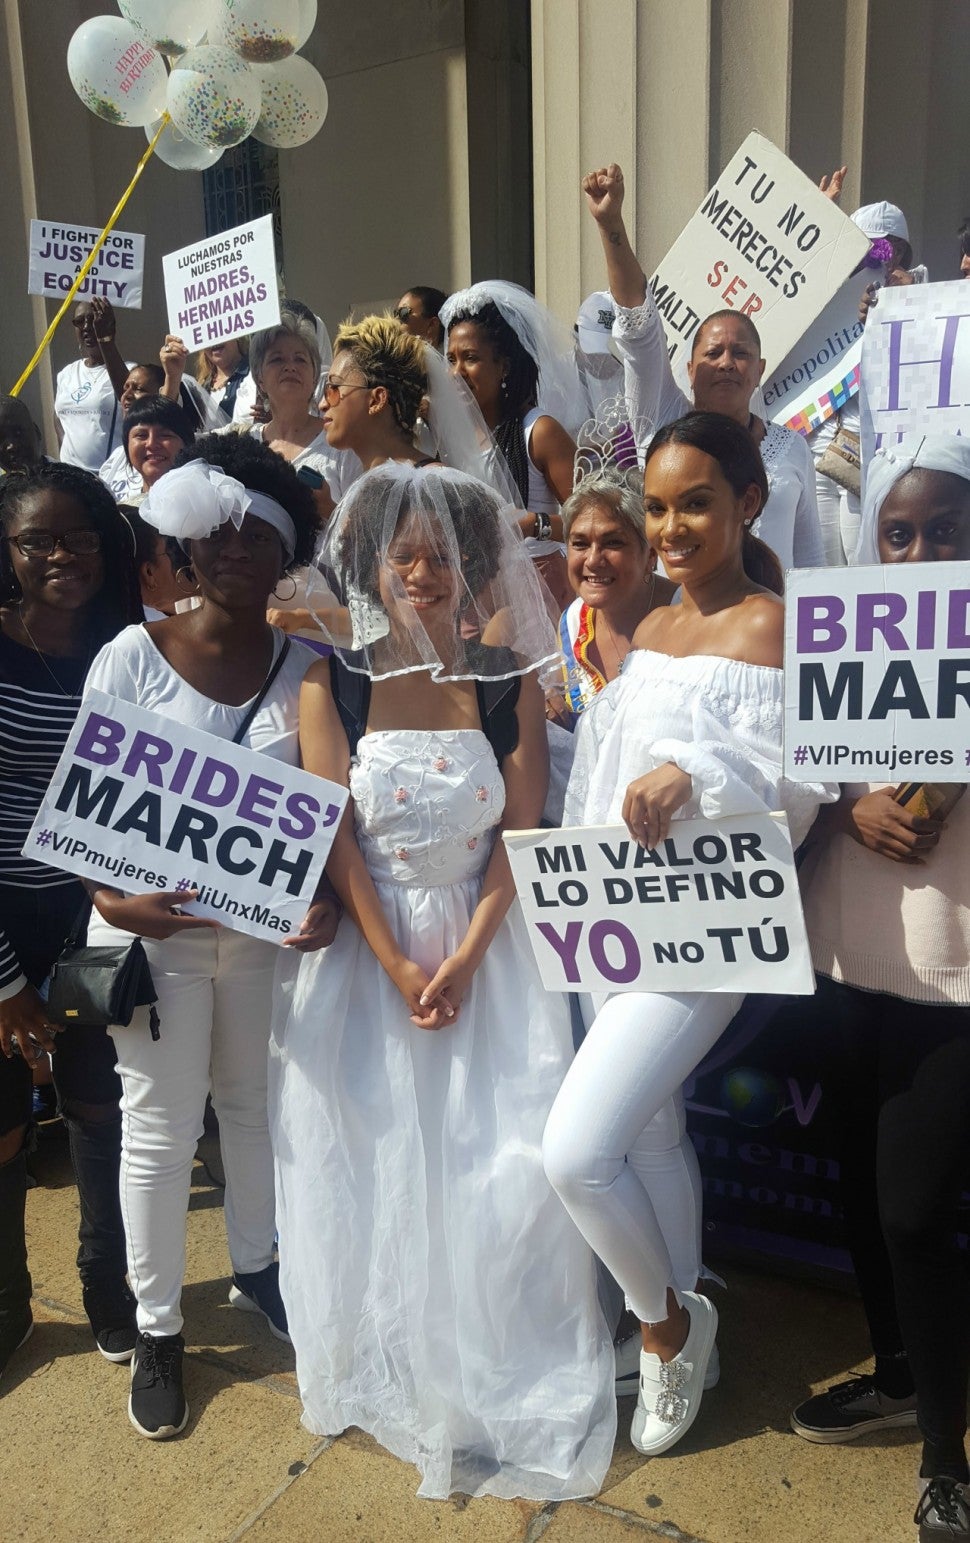 Brides March